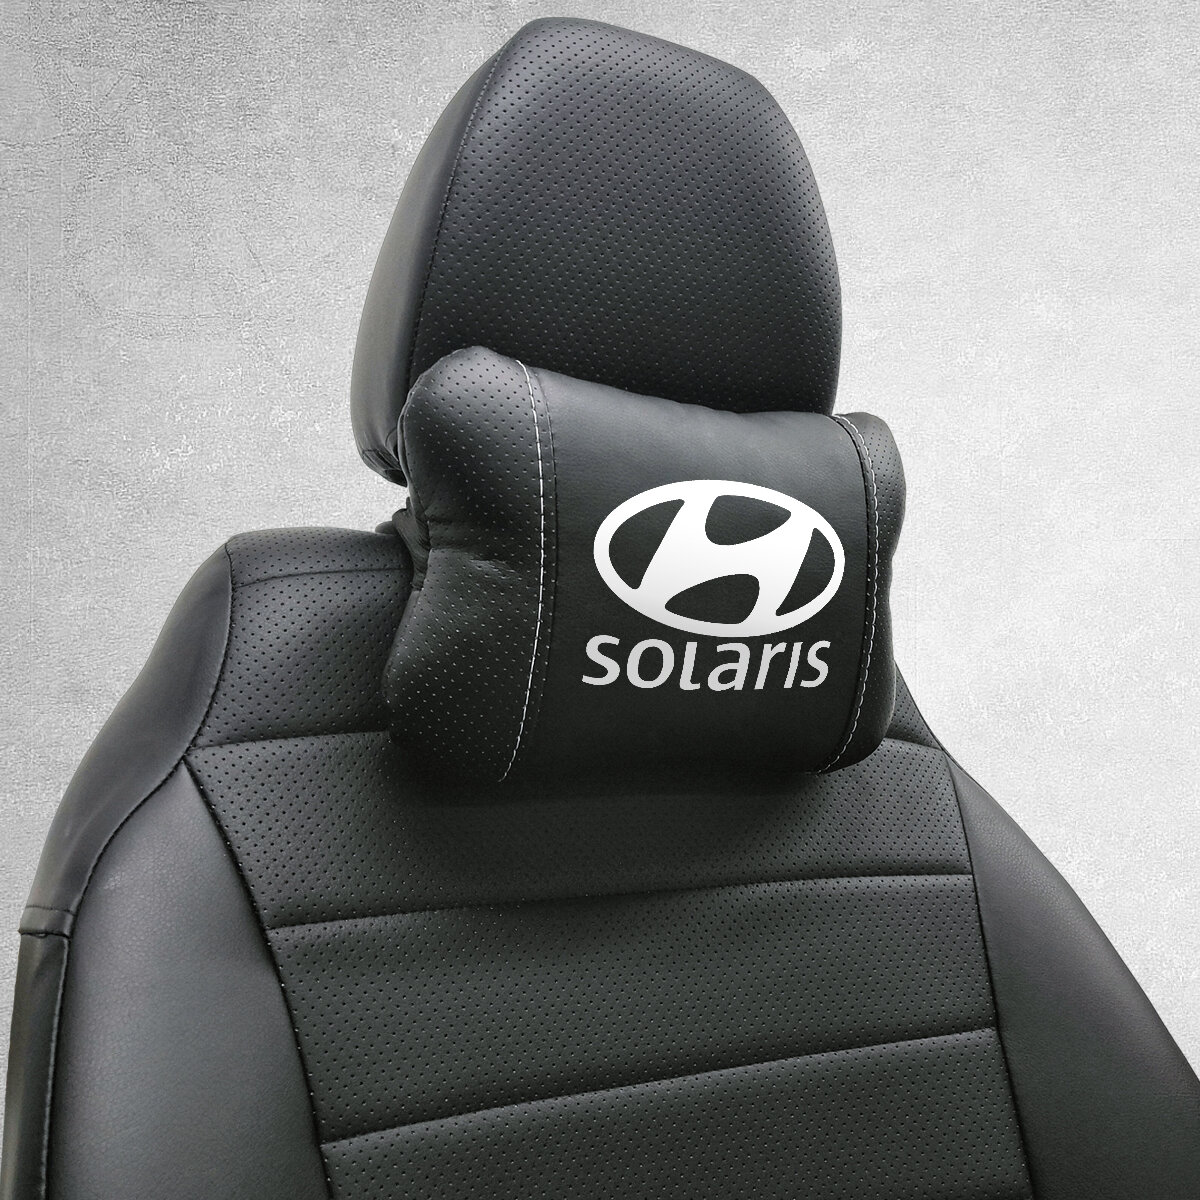 Автомобильная подушка под шею на подголовник эмблема Hyundai Solaris для Хёндай Солярис. Подушка для шеи в машину. Подушка на сиденье автомобиля.